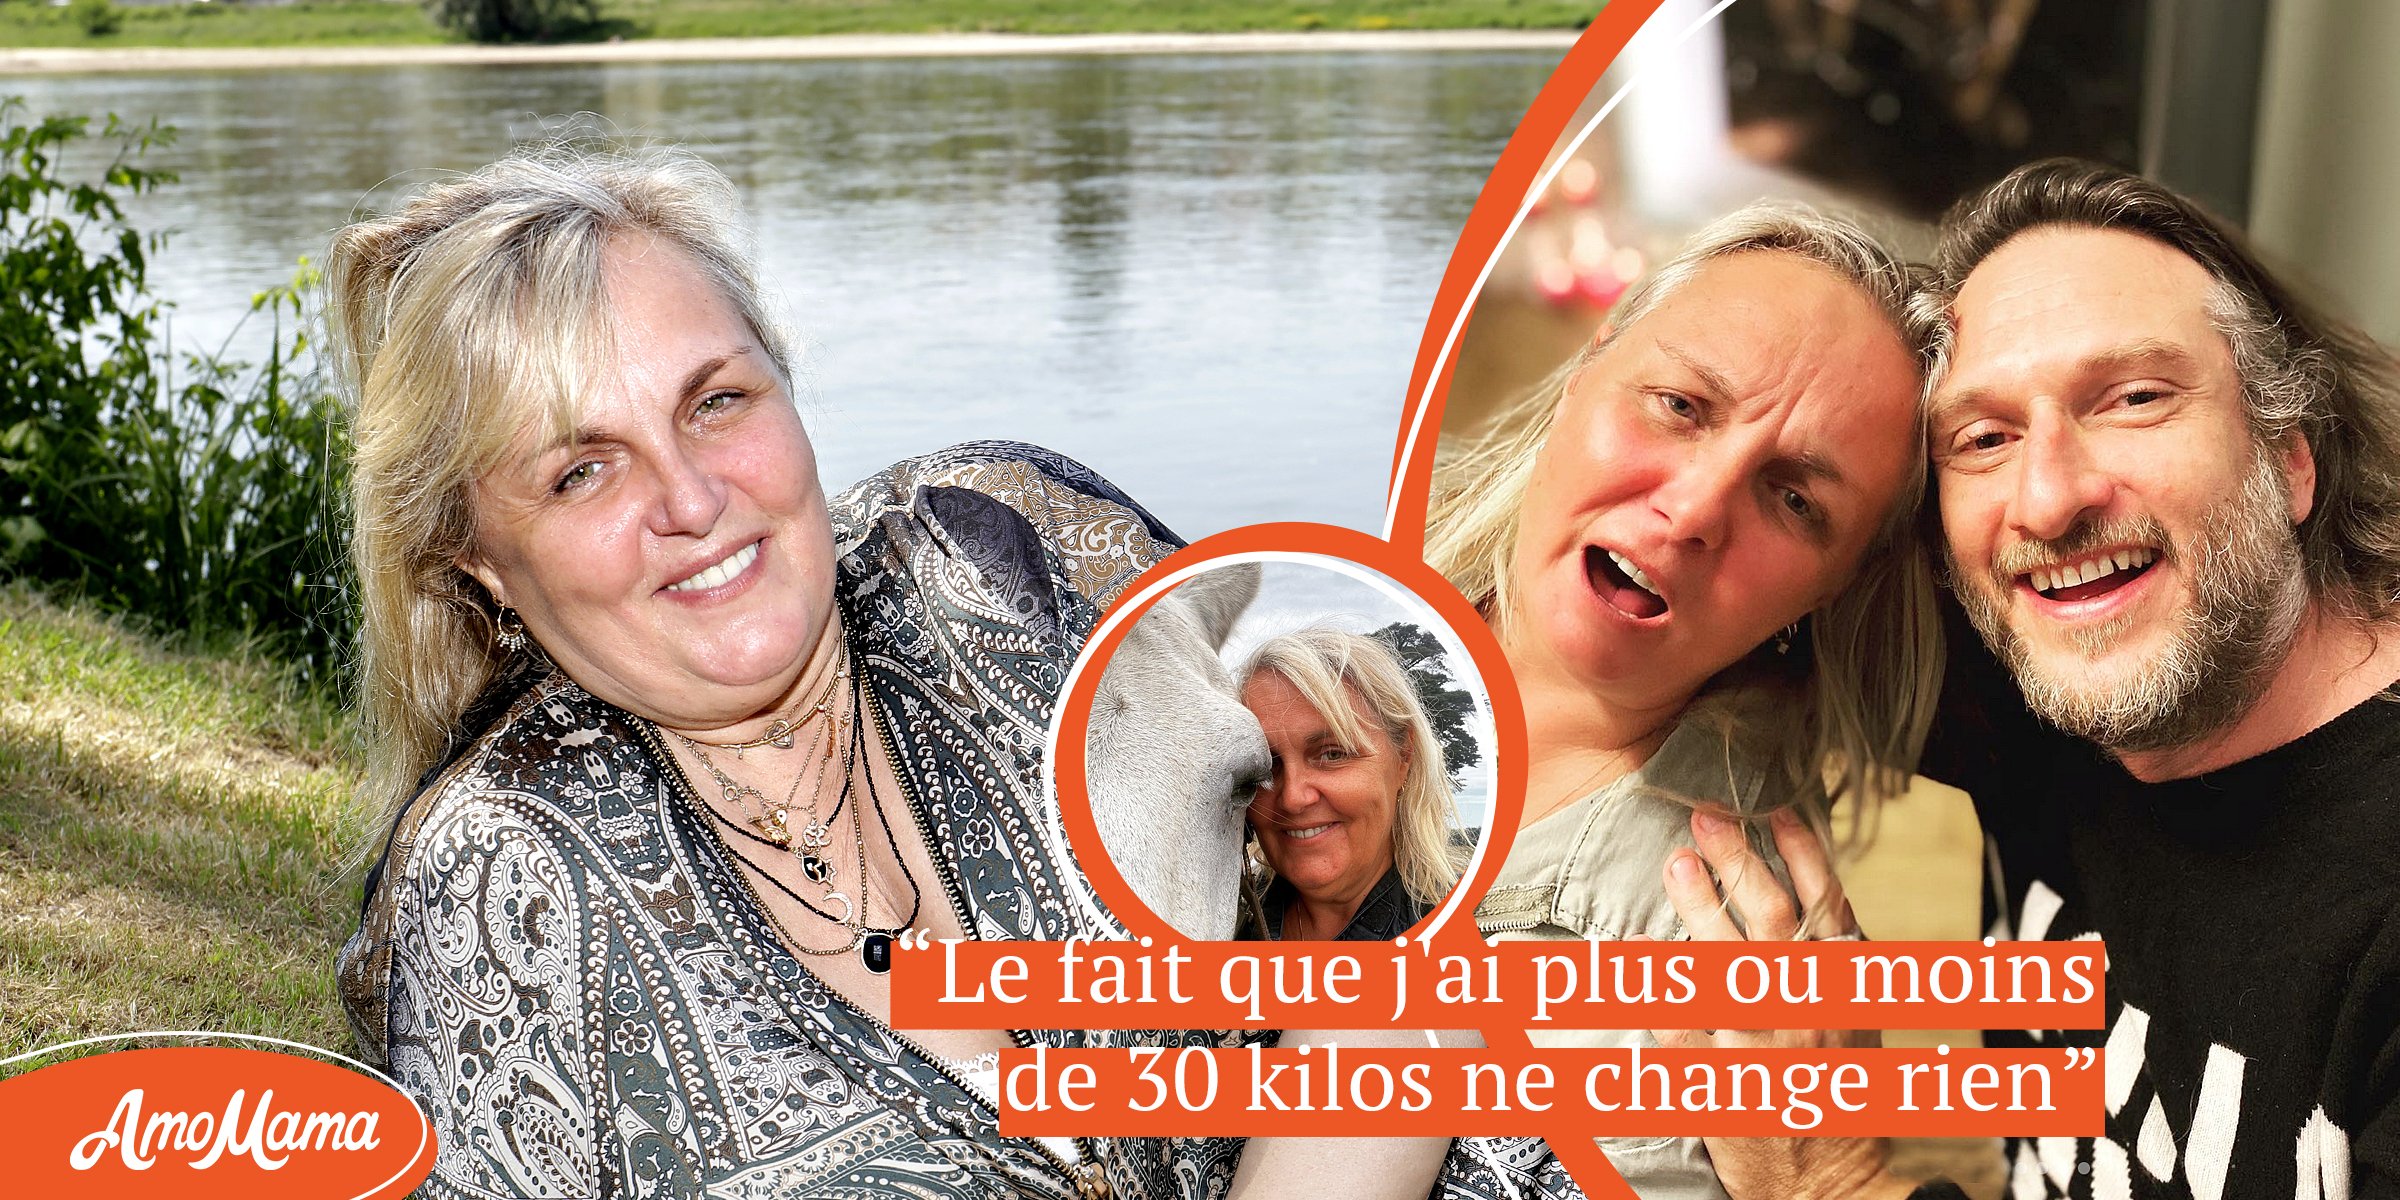 À 57 ans, Valérie Damidot se voit refuser des emplois car elle est “âgée” et “grosse” – Elle a changé de vie, à la campagne avec son chéri